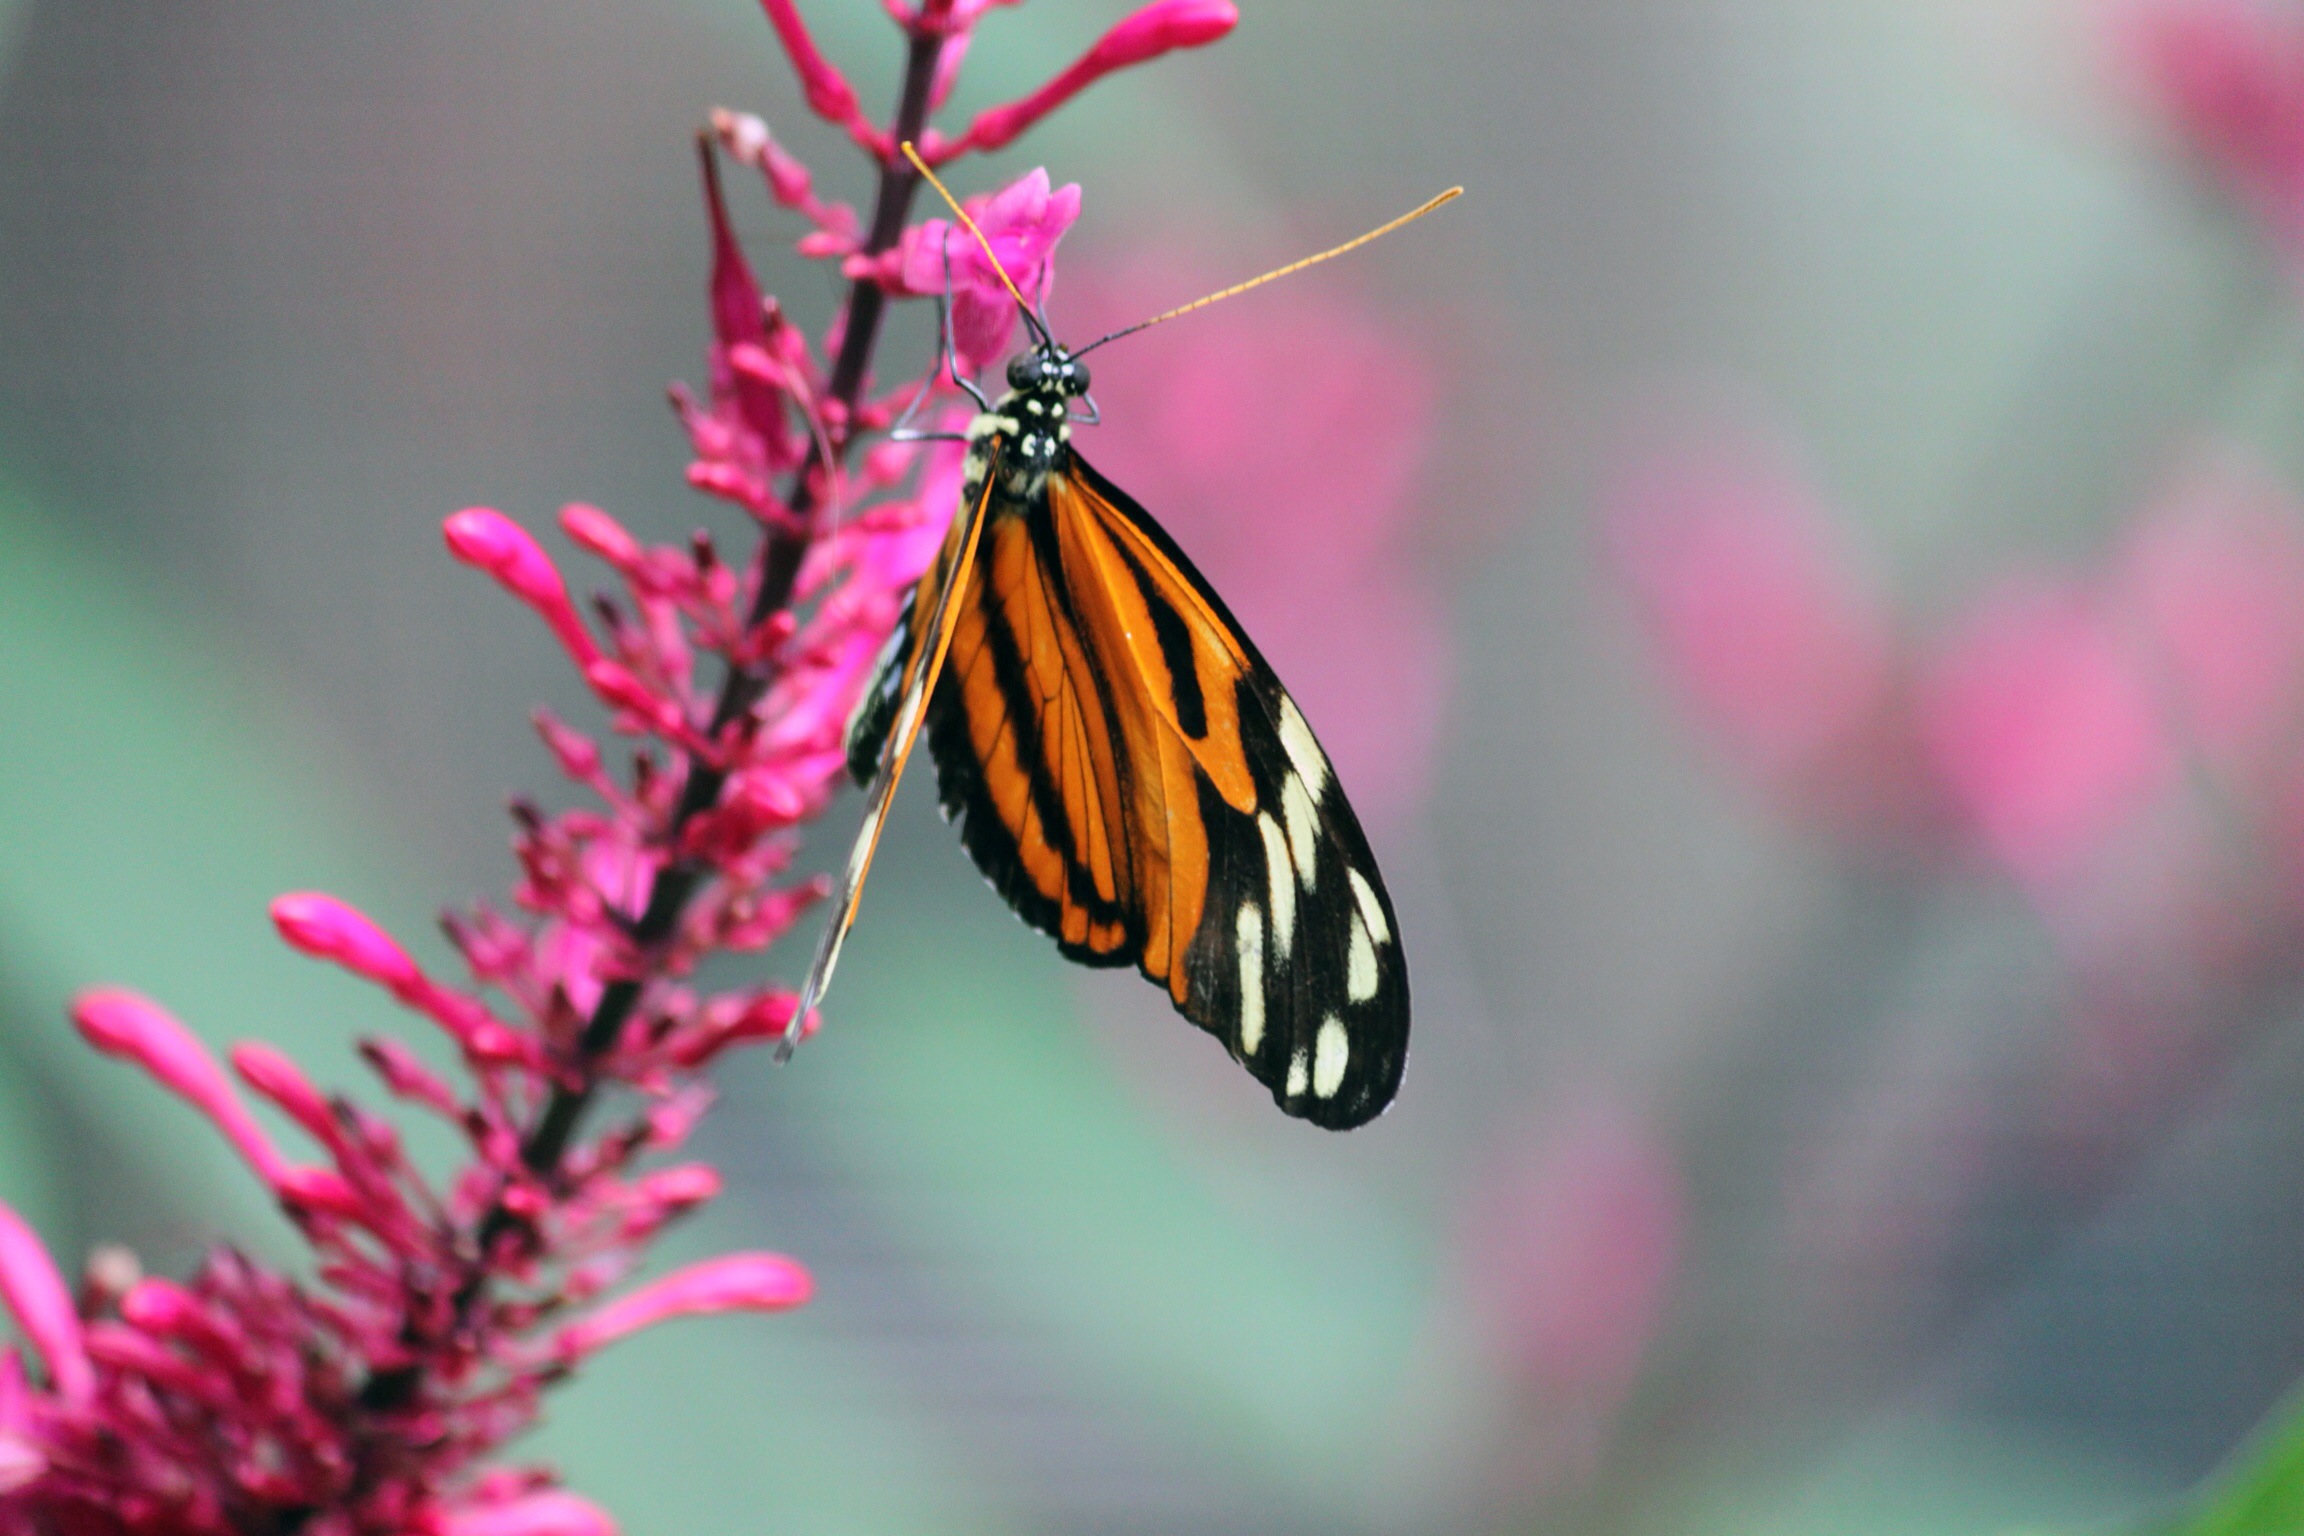 "Monarch Butterfly" - Erica Christiansen